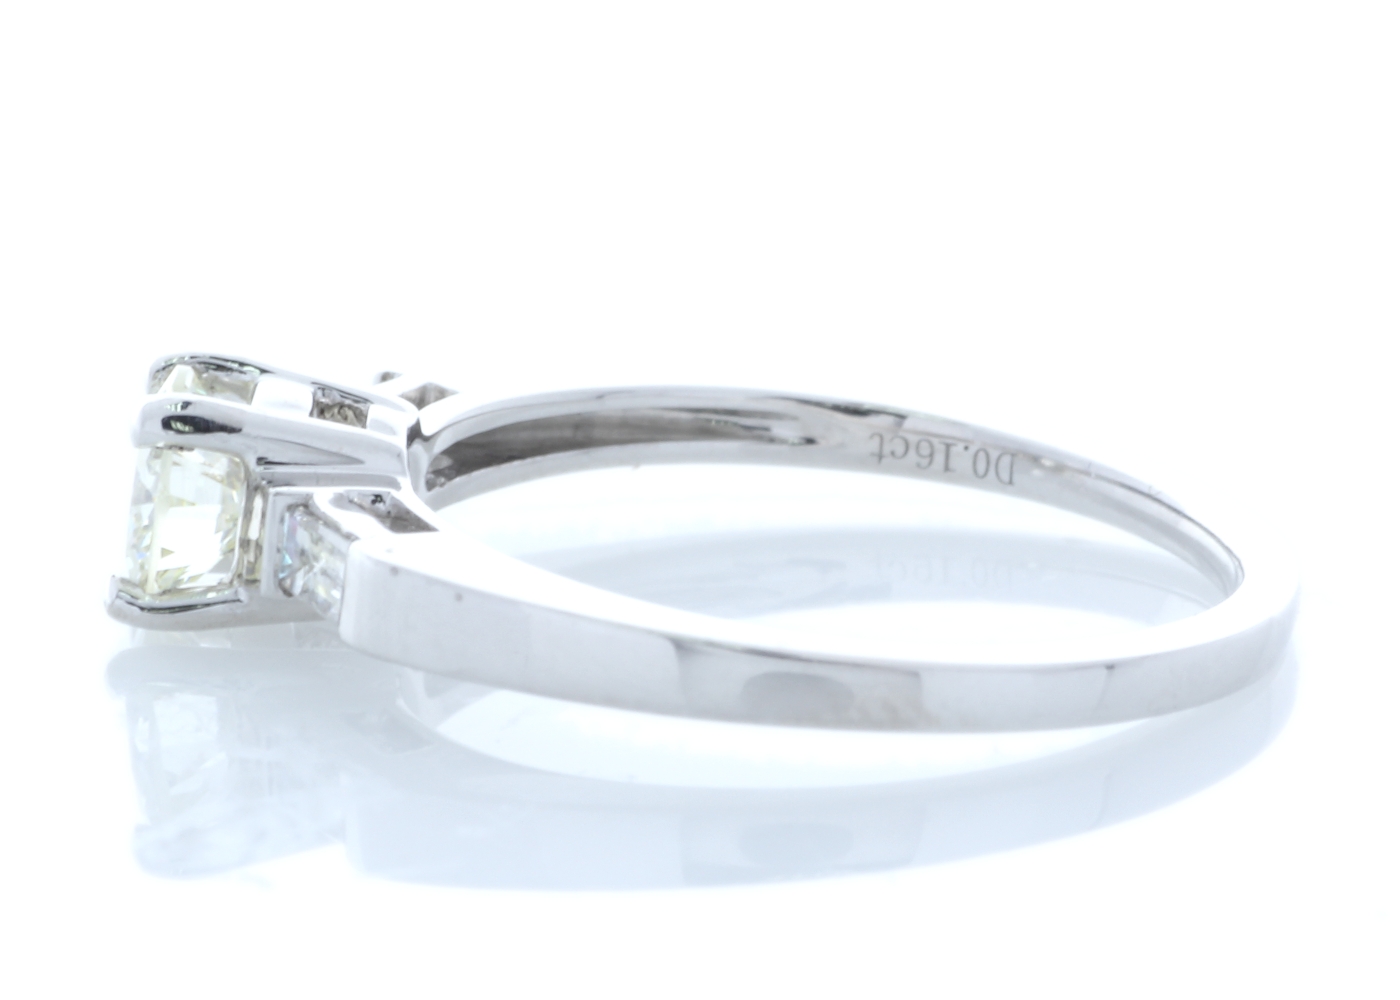 18k White Gold Baguette Shoulder Set Diamond Ring 0.67 Carats - Image 2 of 5